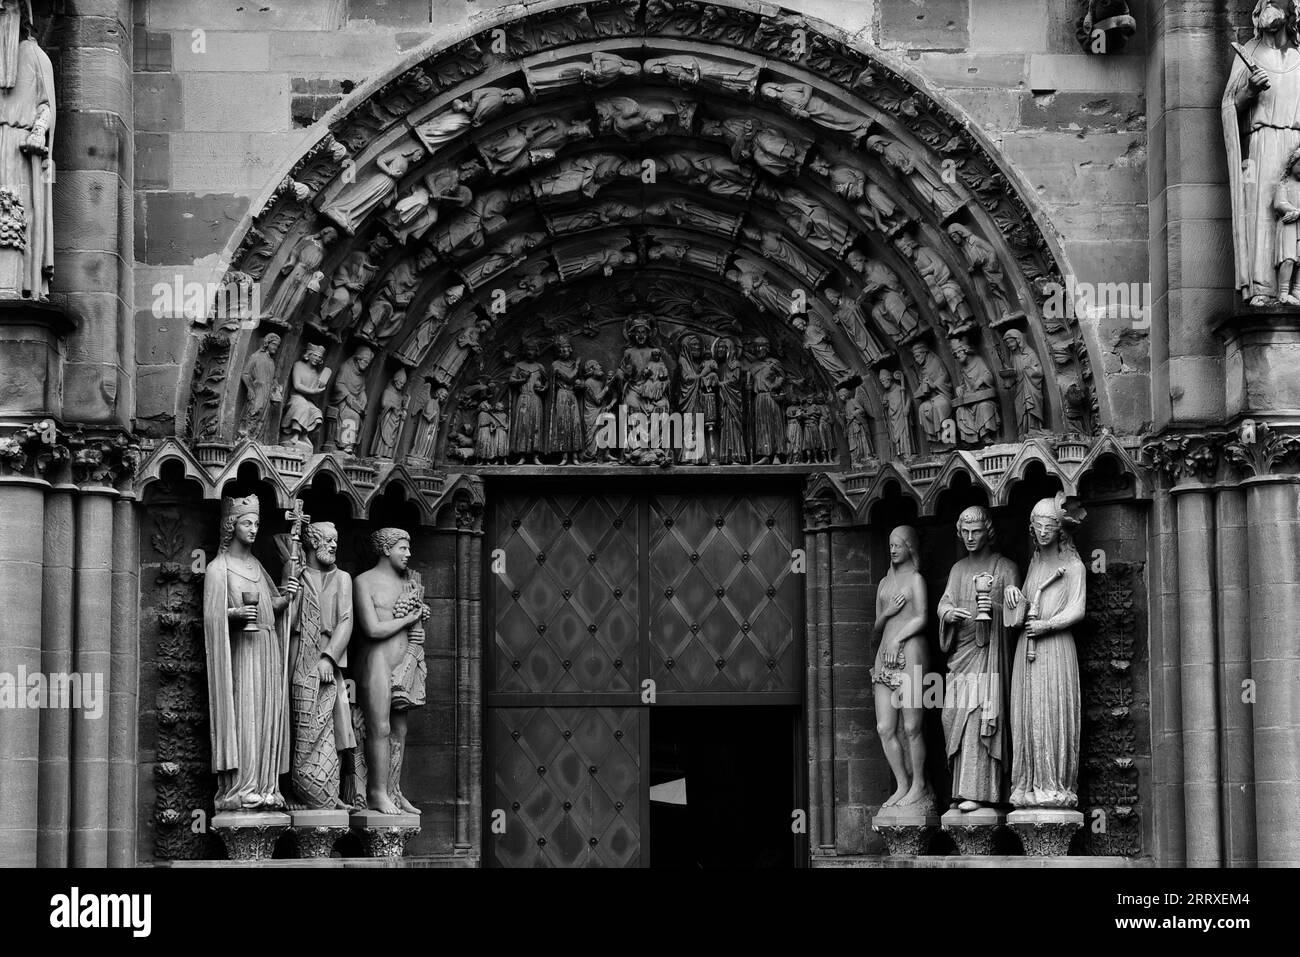 Relief à l'entrée de la cathédrale de Trèves (haute cathédrale Saint-Pierre), la plus ancienne cathédrale d'Allemagne. Tirer, Allemagne Banque D'Images